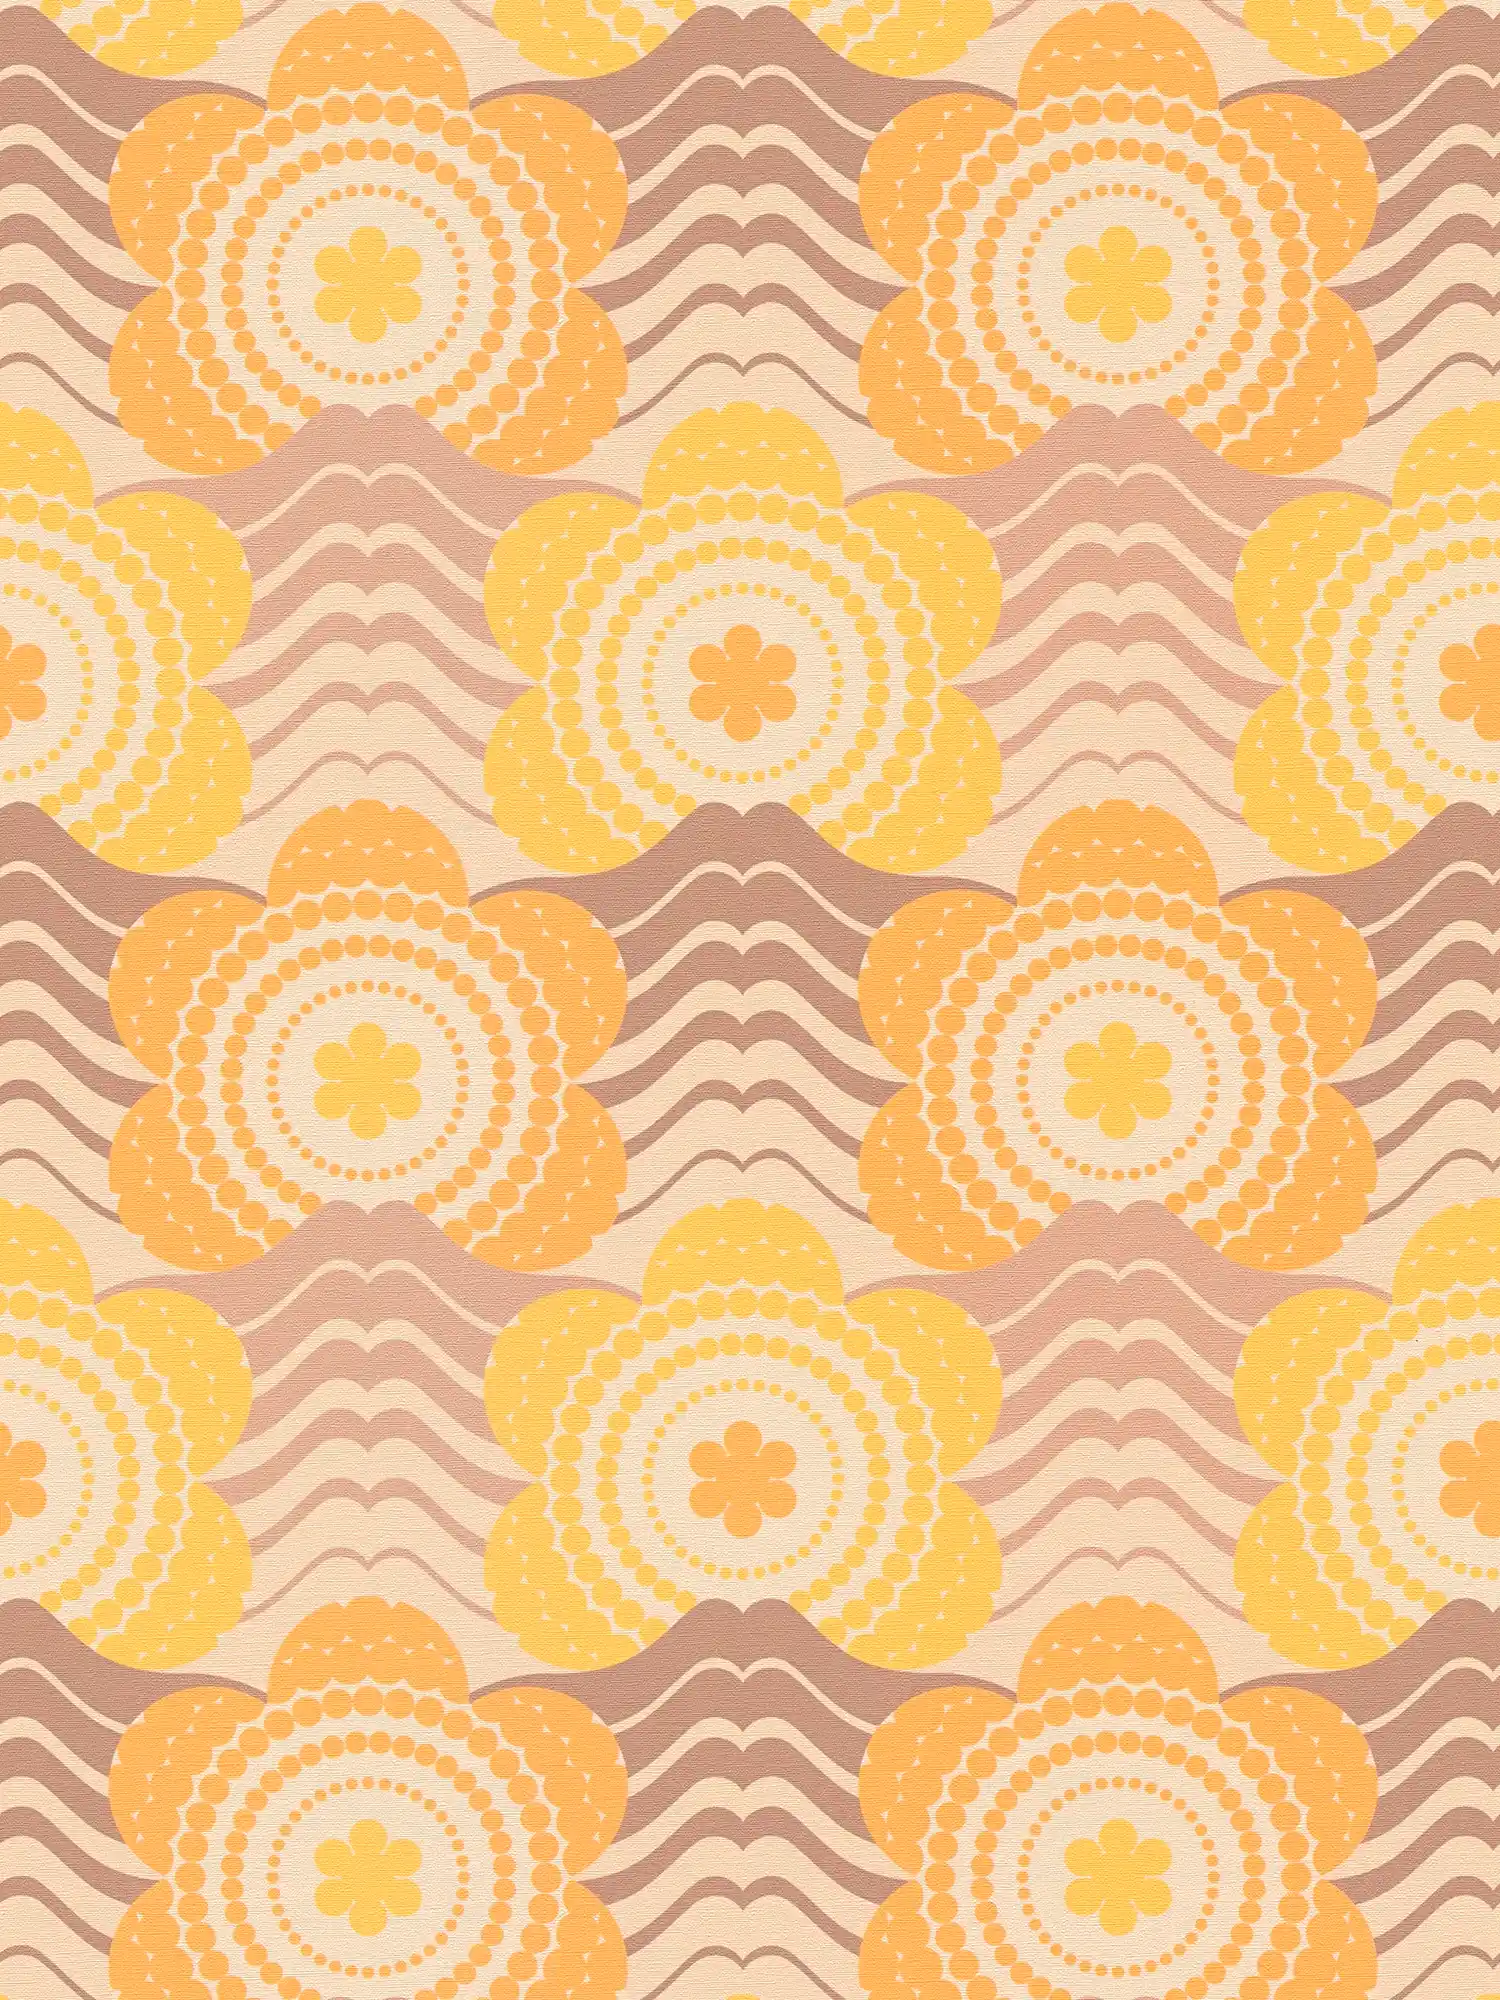 papier peint en papier intissé à motifs floraux dans le style des années 70 - beige, marron, orange
